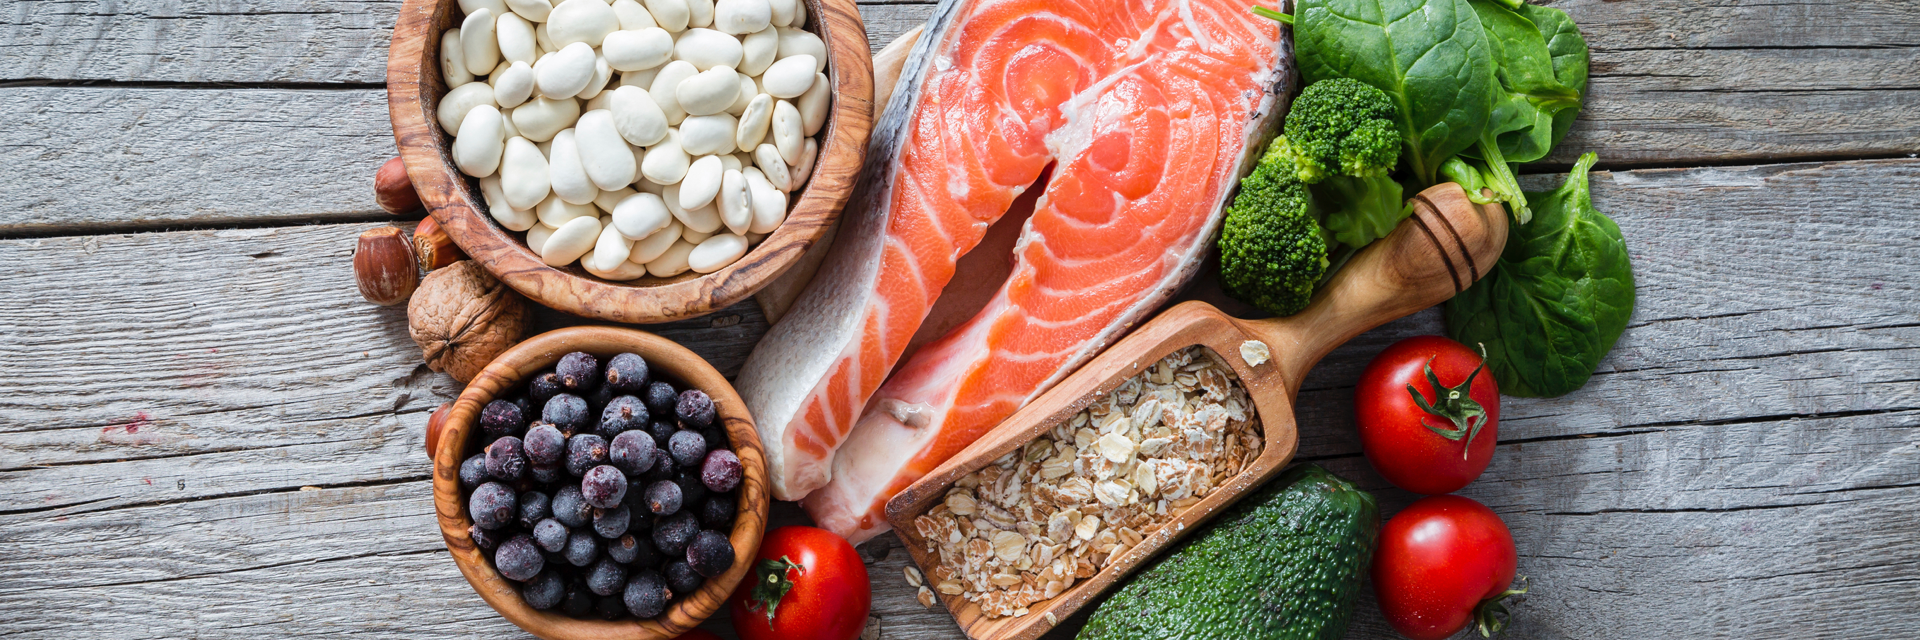 Cholesterol lowering diet plan